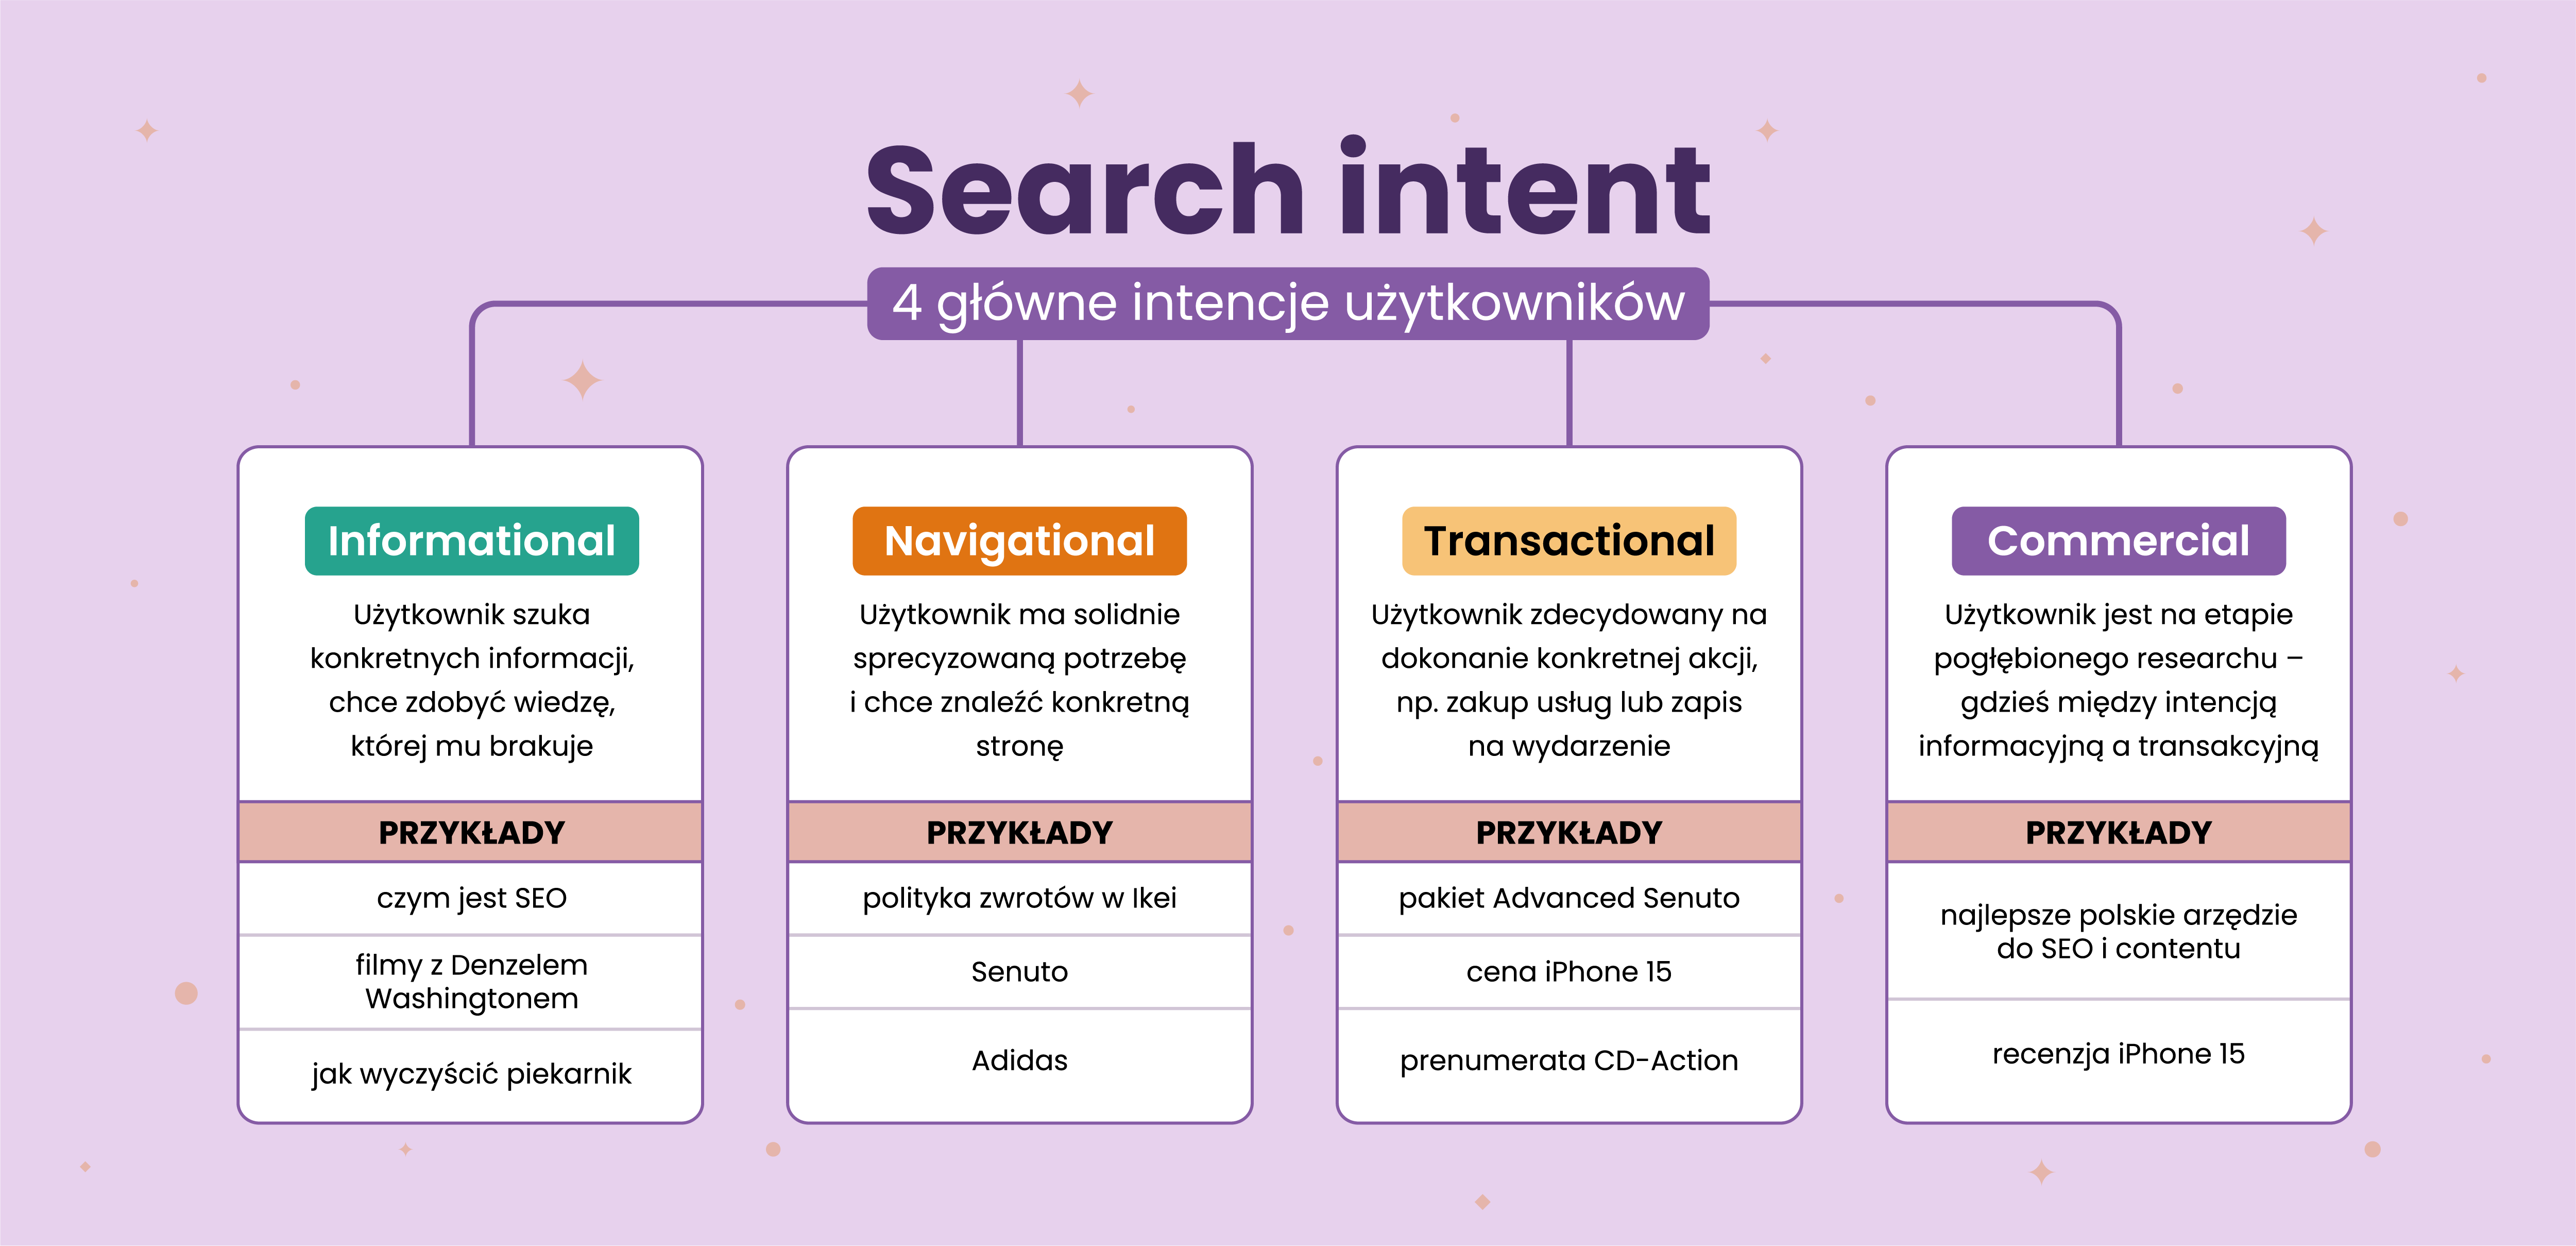 Search intent - rodzaje i przykłady intencji użytkownika | senuto.com